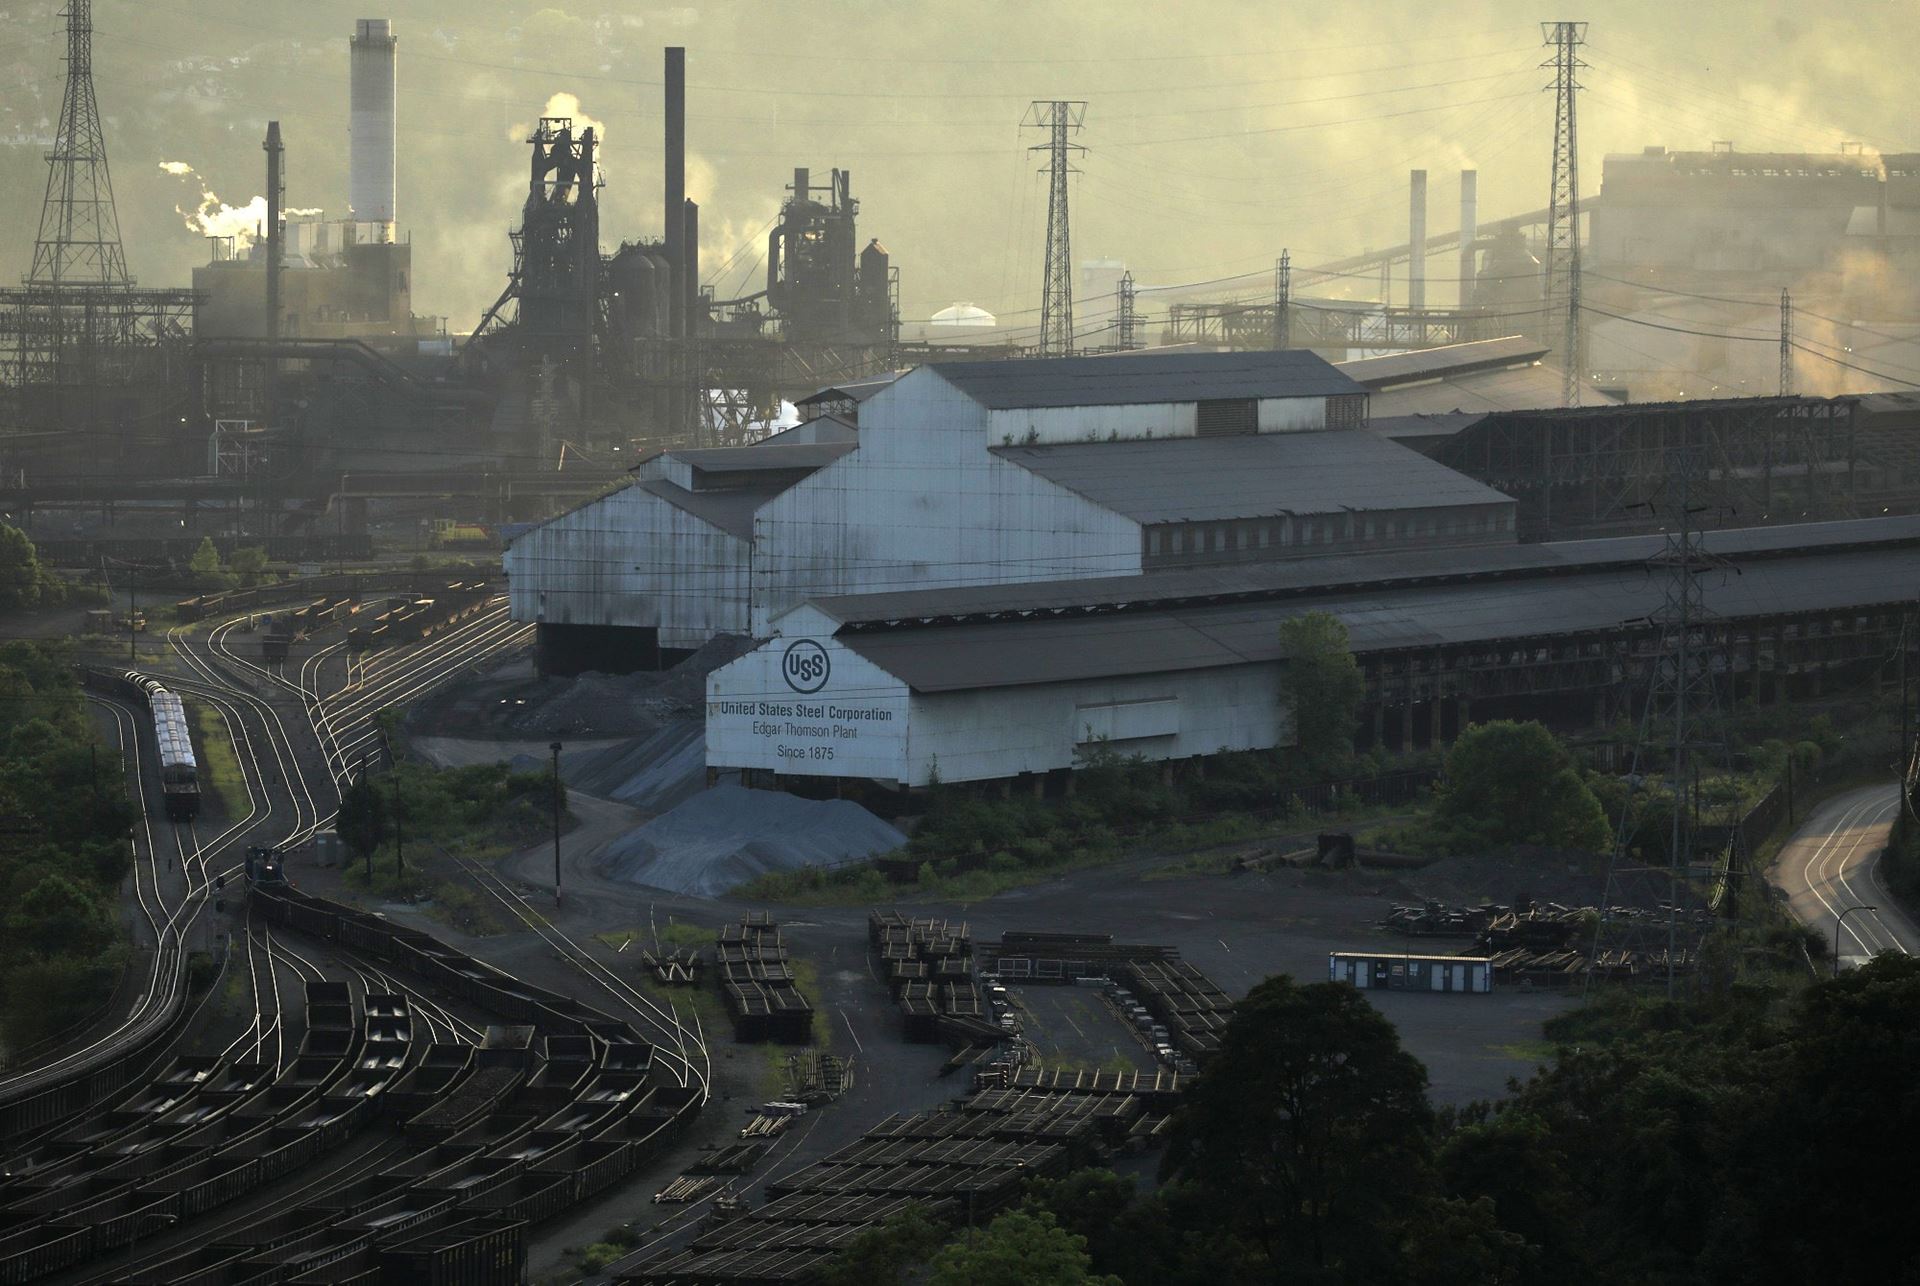 US Steel ikinci çeyrekte sevkiyatlarda düşüş yaşadı